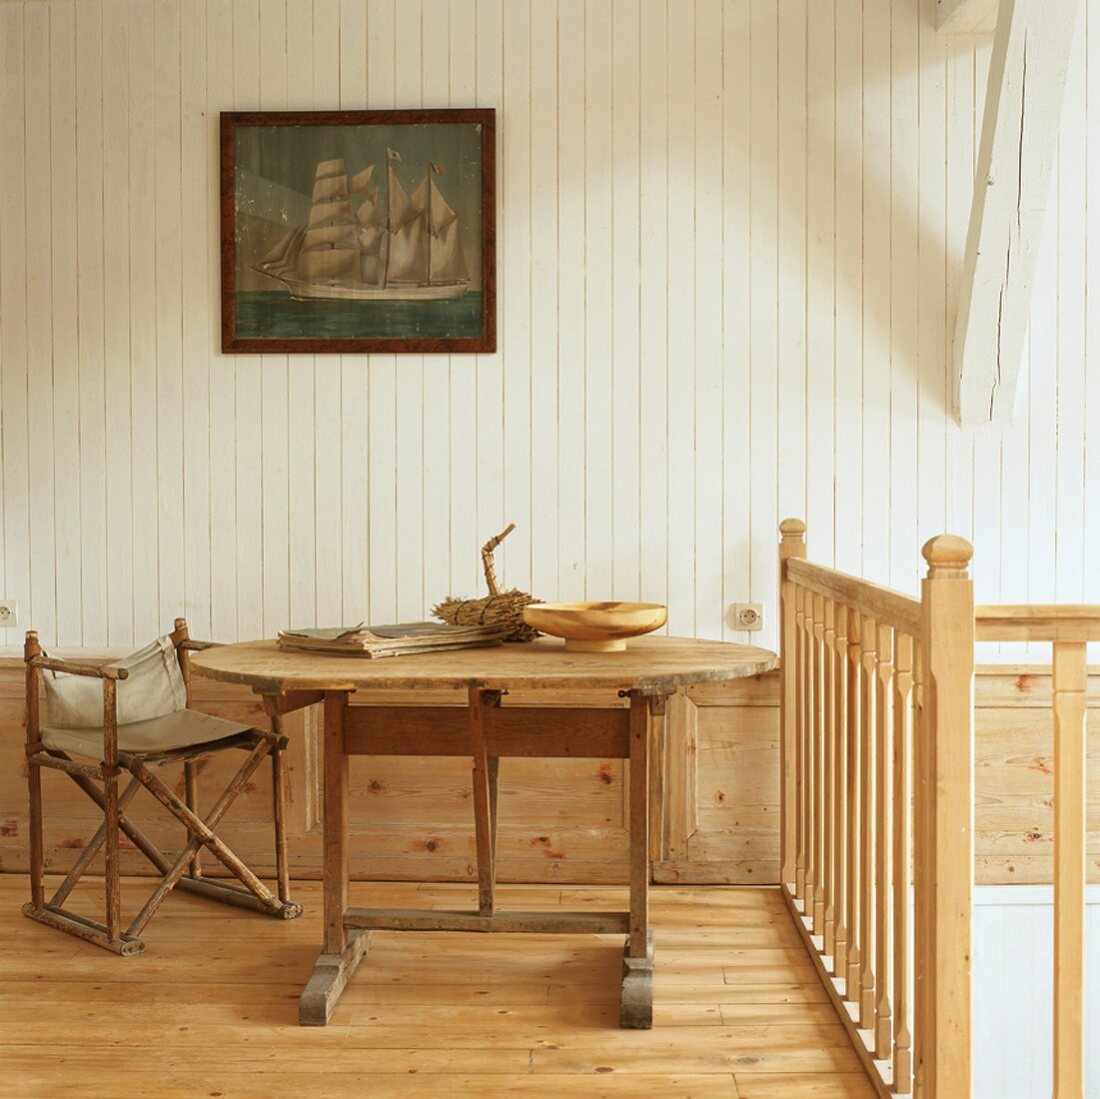 Ein alter Klappstuhl neben einem rustikalen Holztisch im ländlichen Ambiente eines Bauernhauses